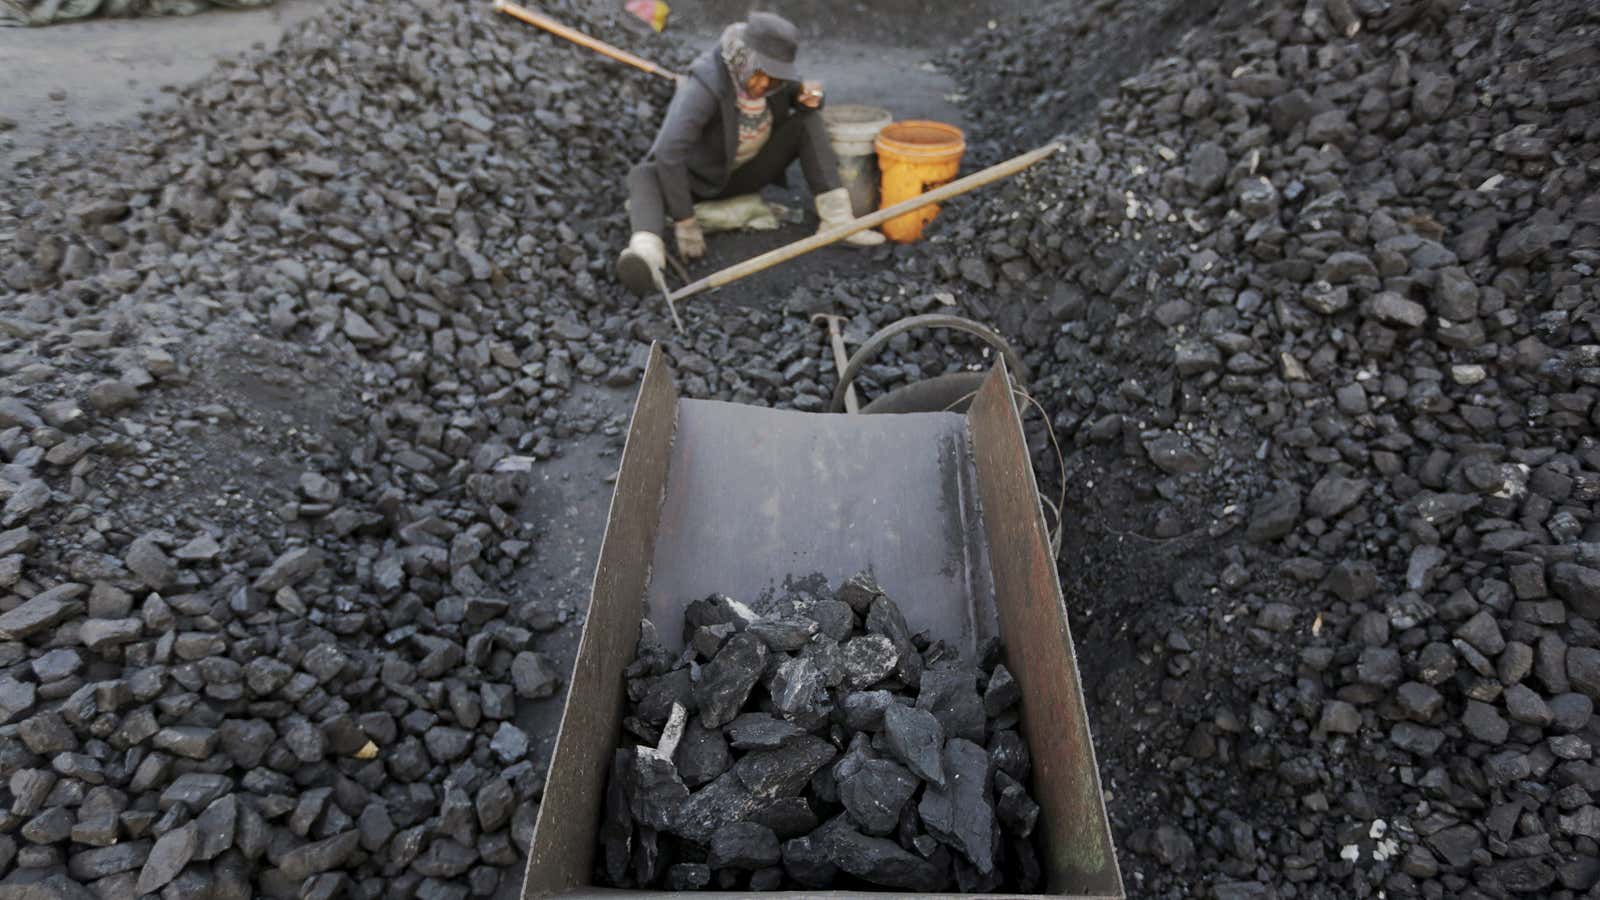 More coal.